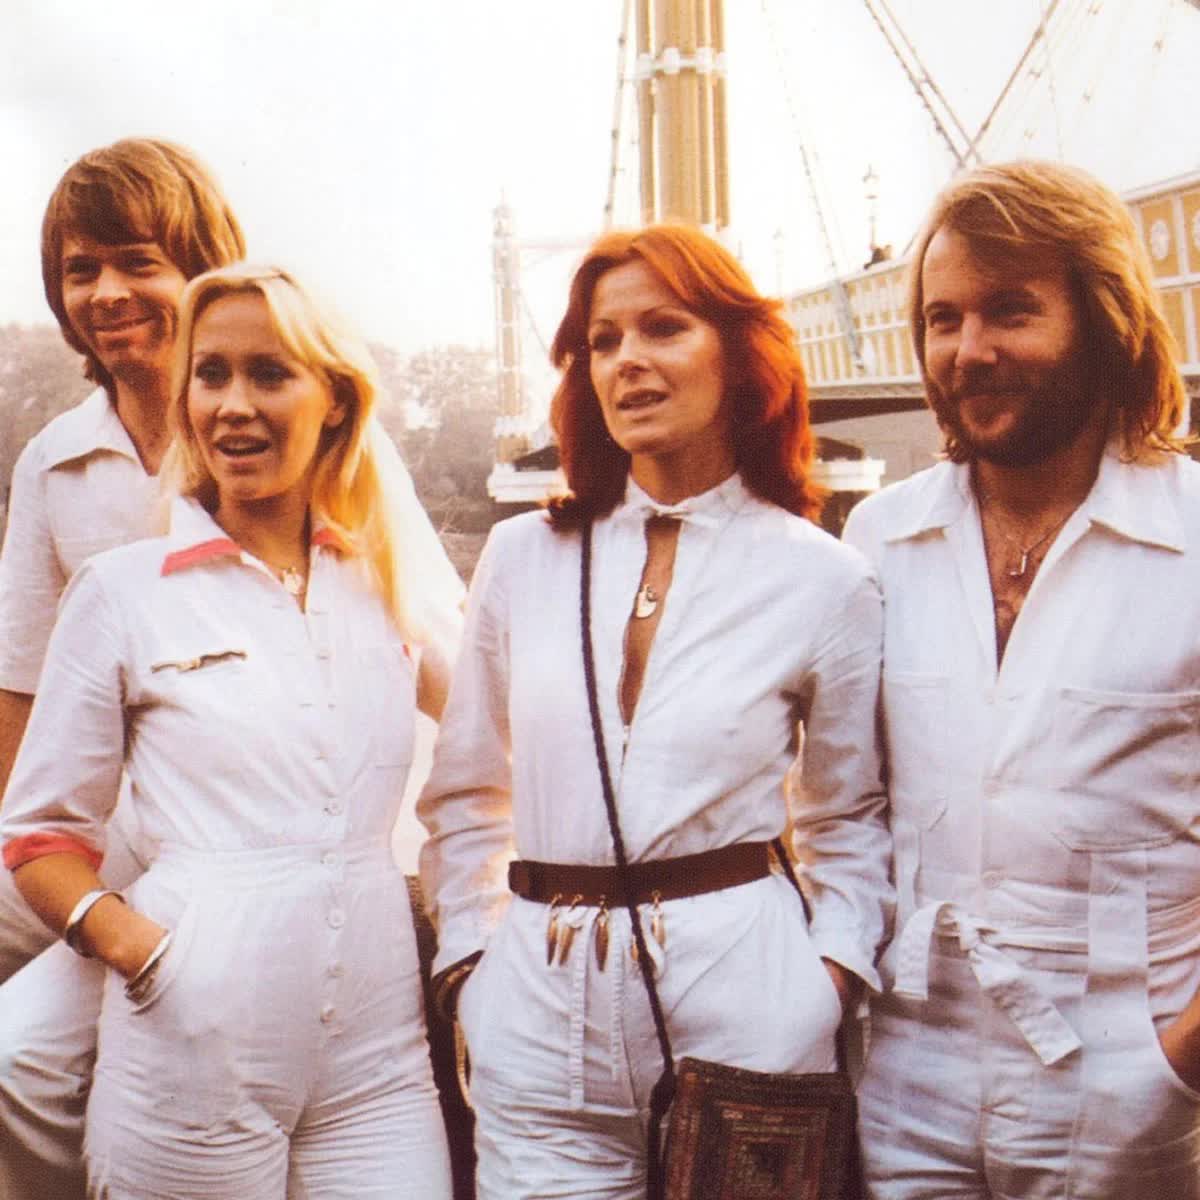 Le groupe ABBA. 80-е